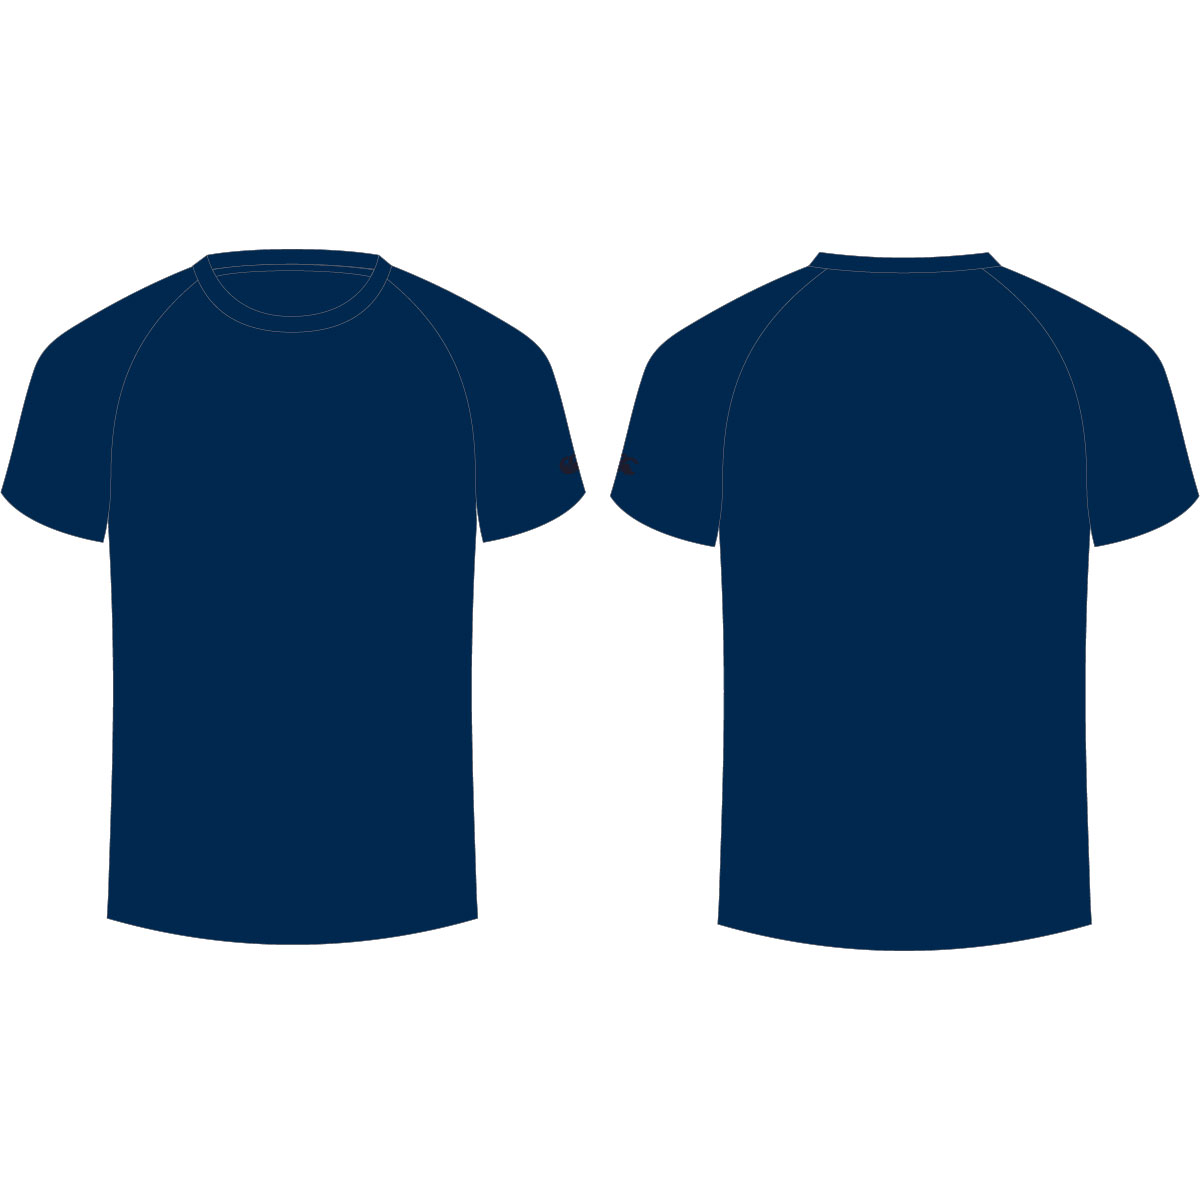 t-shirt-template-blue-clipart-best